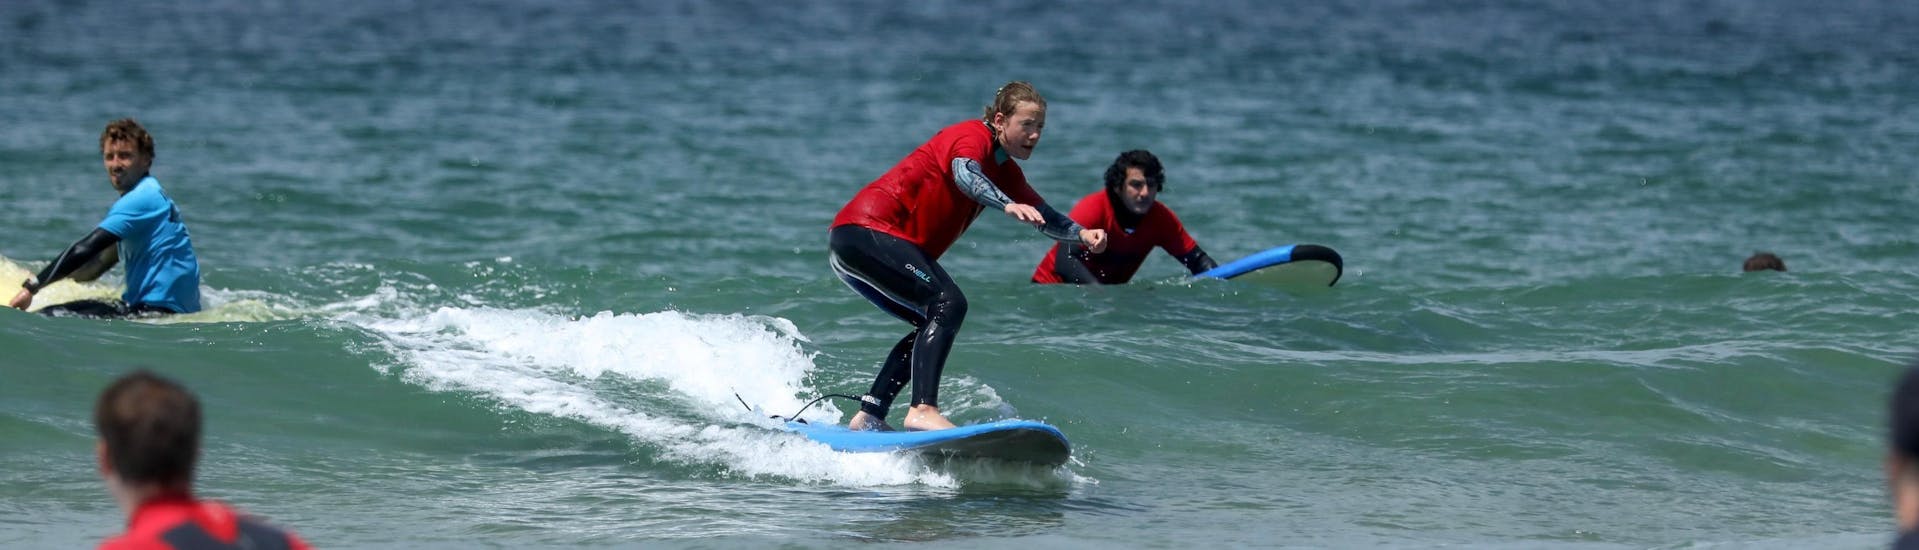 Lezioni private di surf (dai 7 anni).